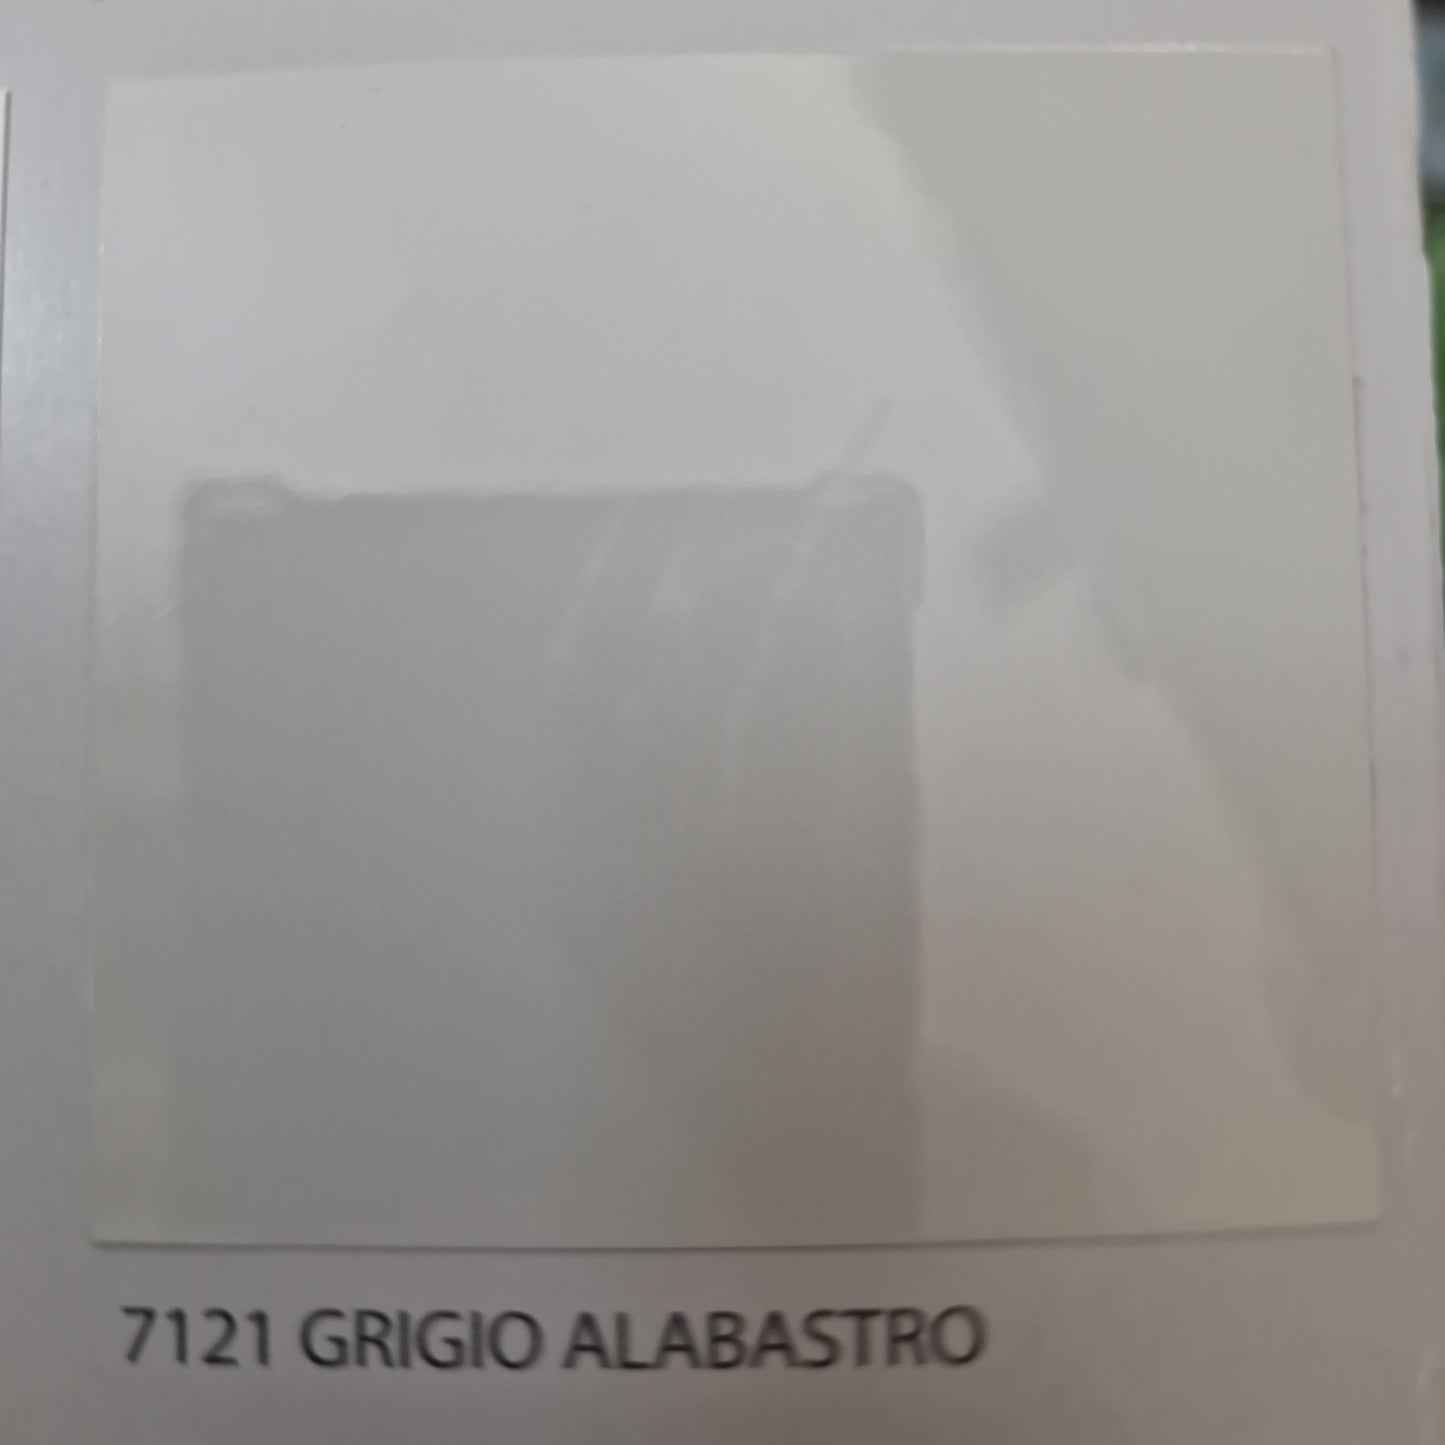 SMALTO ANTIRUGGINE PERTRE GRIGIO ALABASTRO LUCIDO 0,75Lt